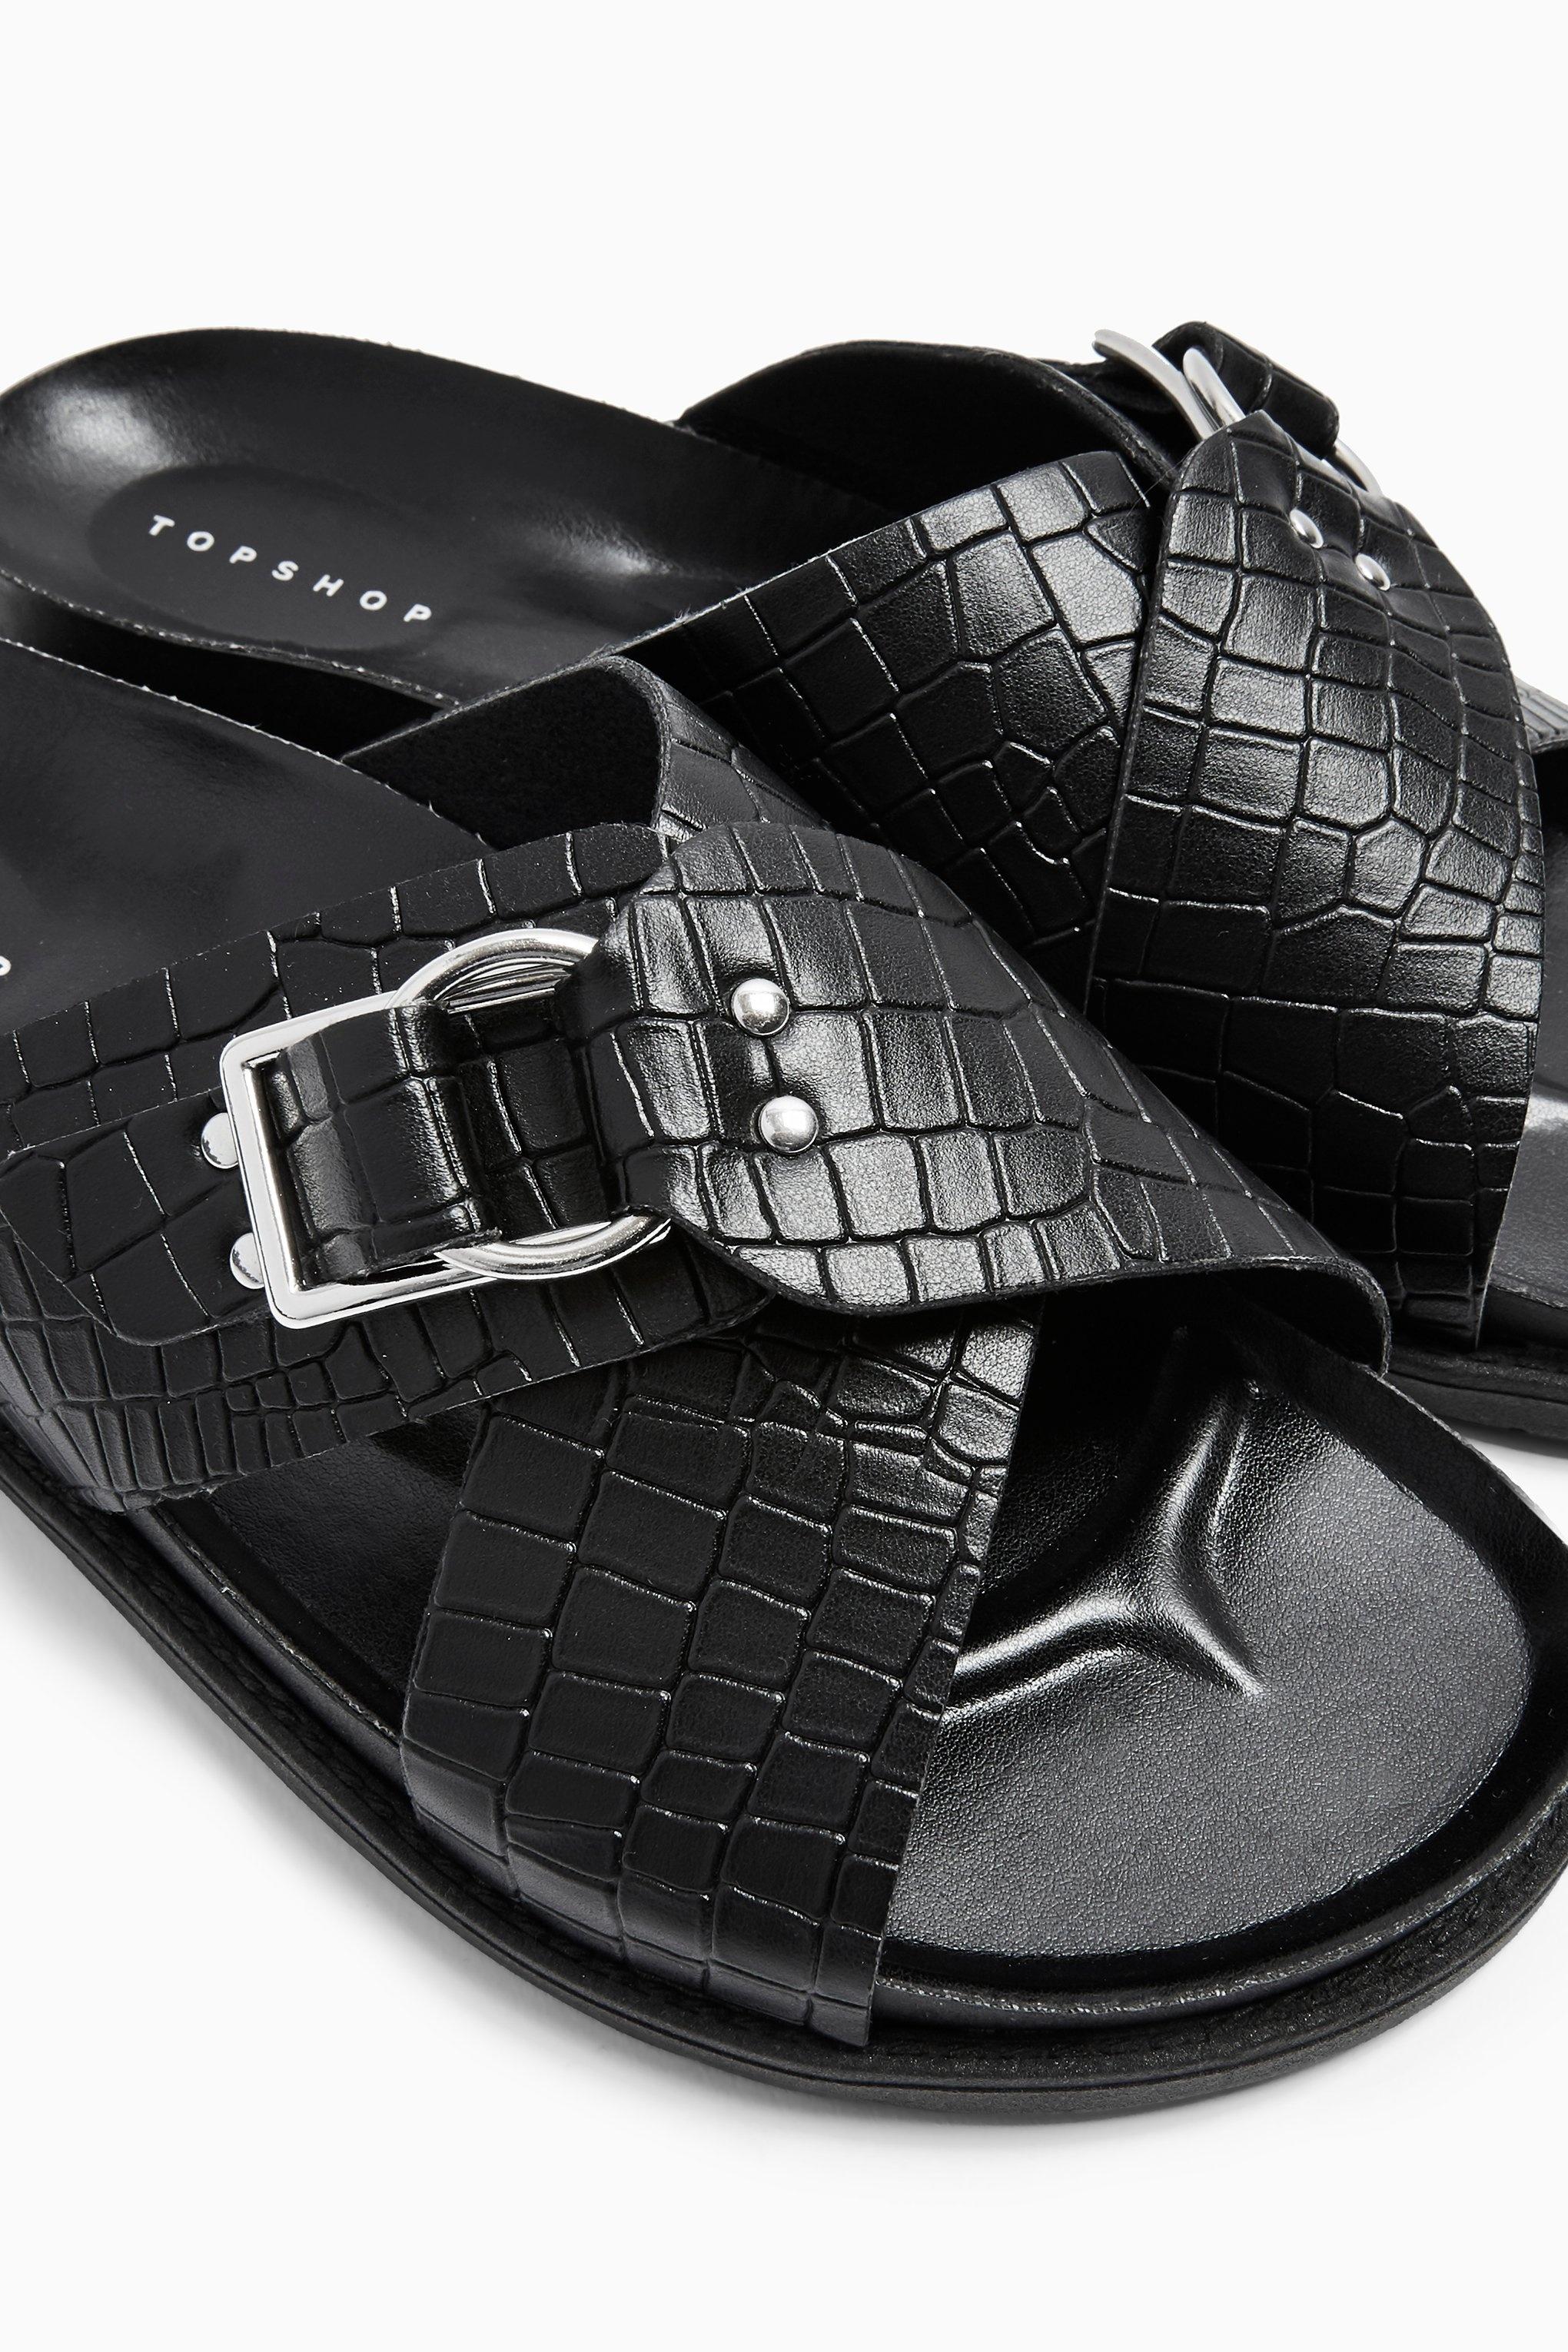 black footbed sandals